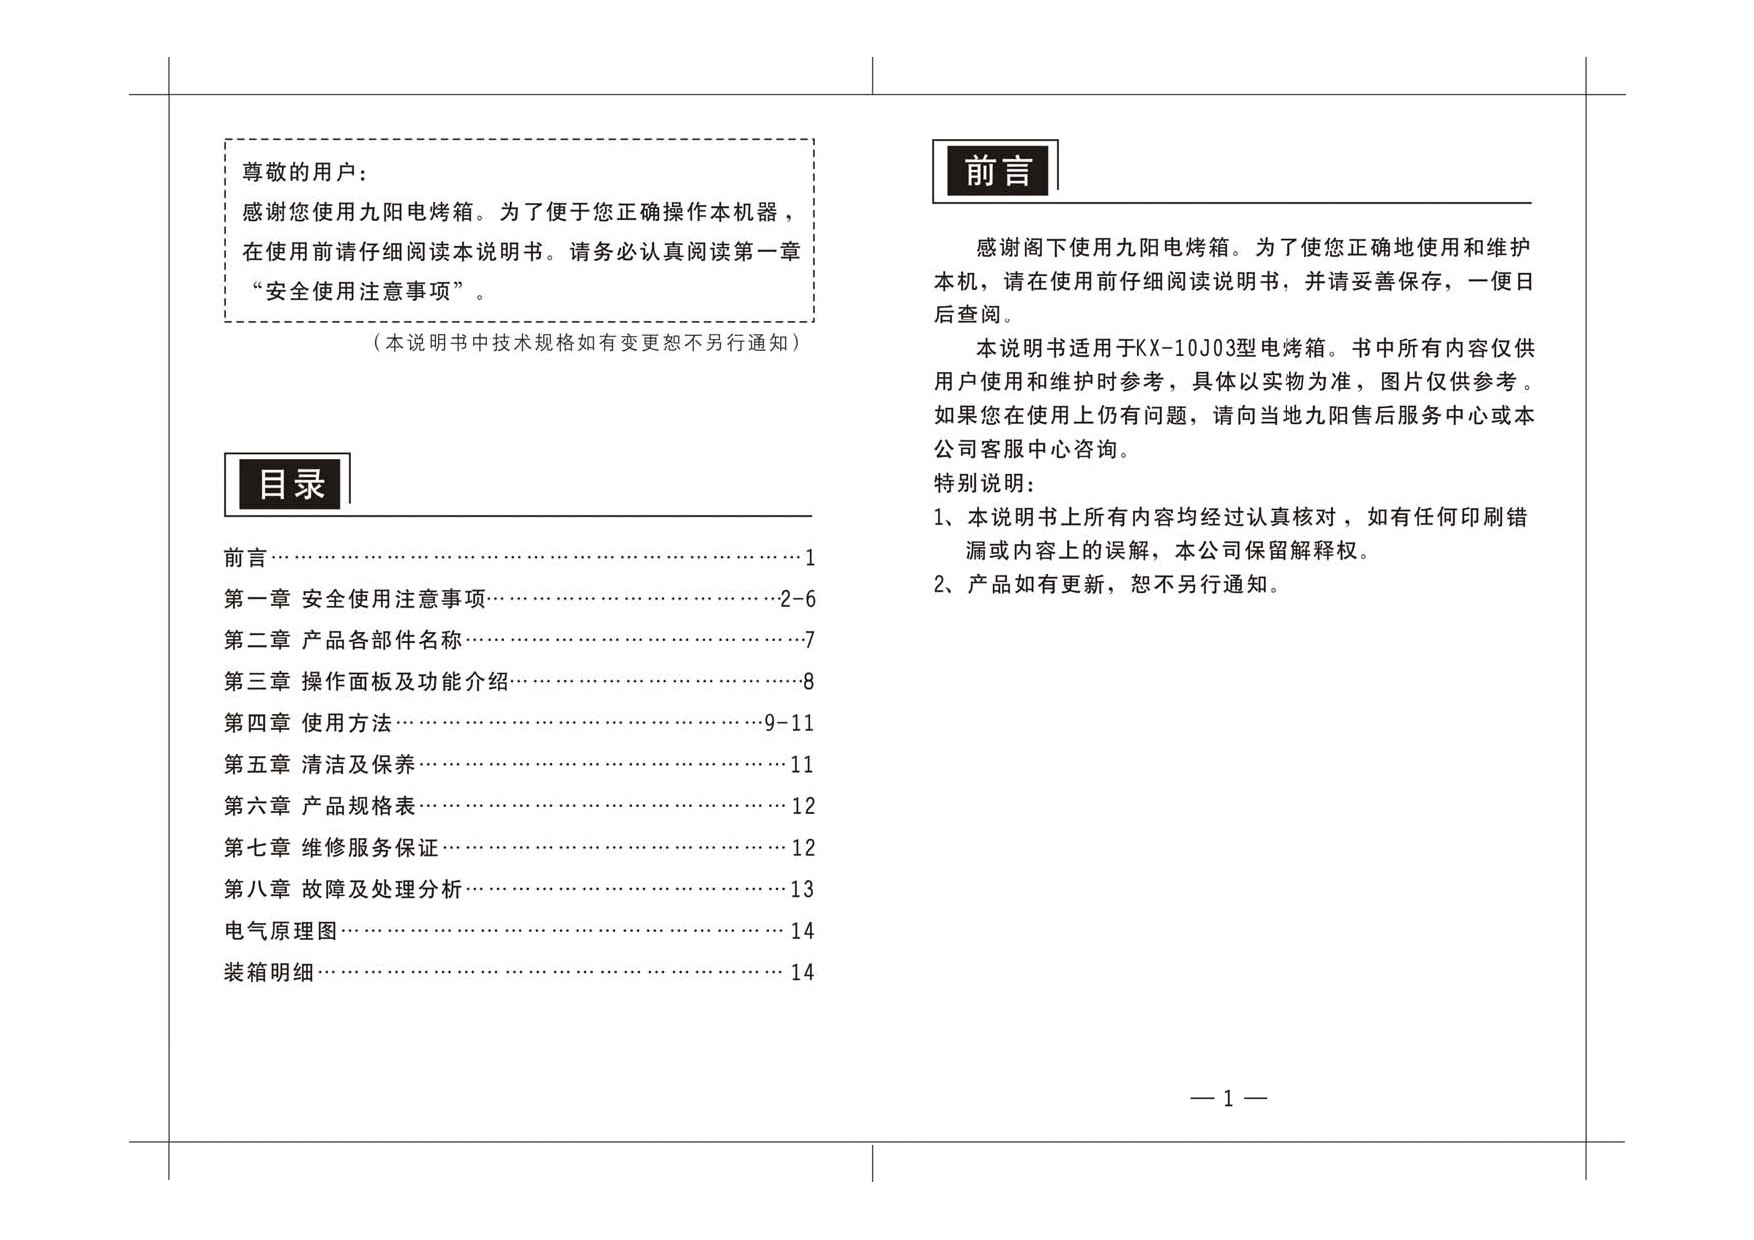 九阳 Joyyoung KX-10J03 使用说明书 第1页